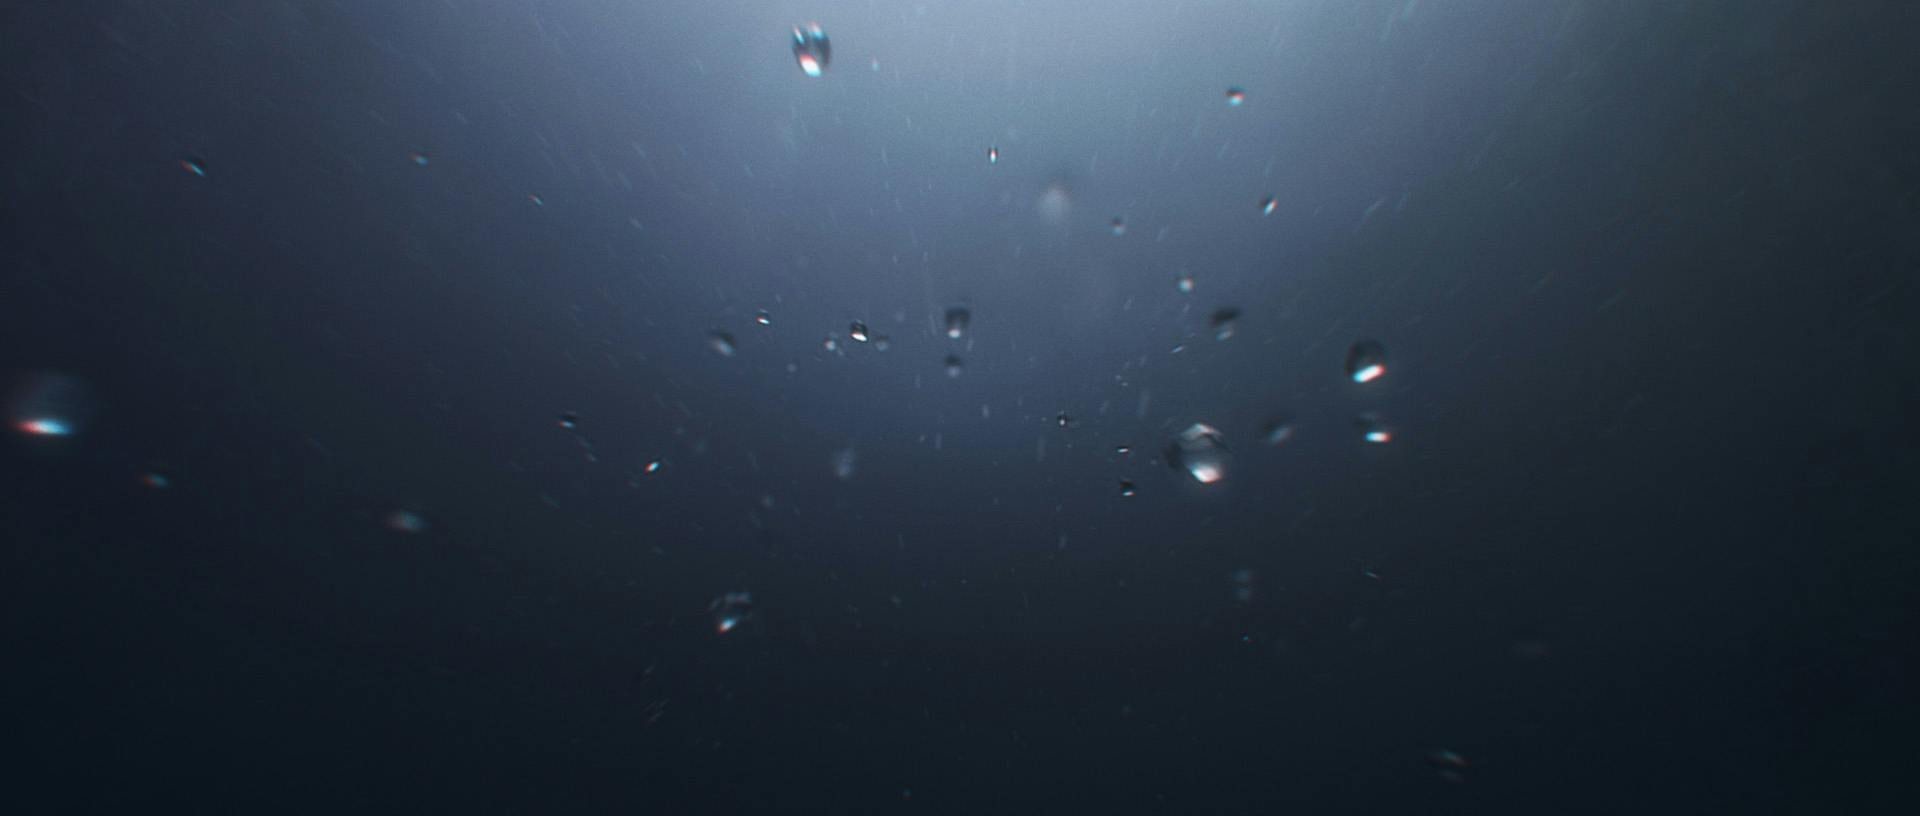 Bubblor under vattnet i ett mörkt hav.